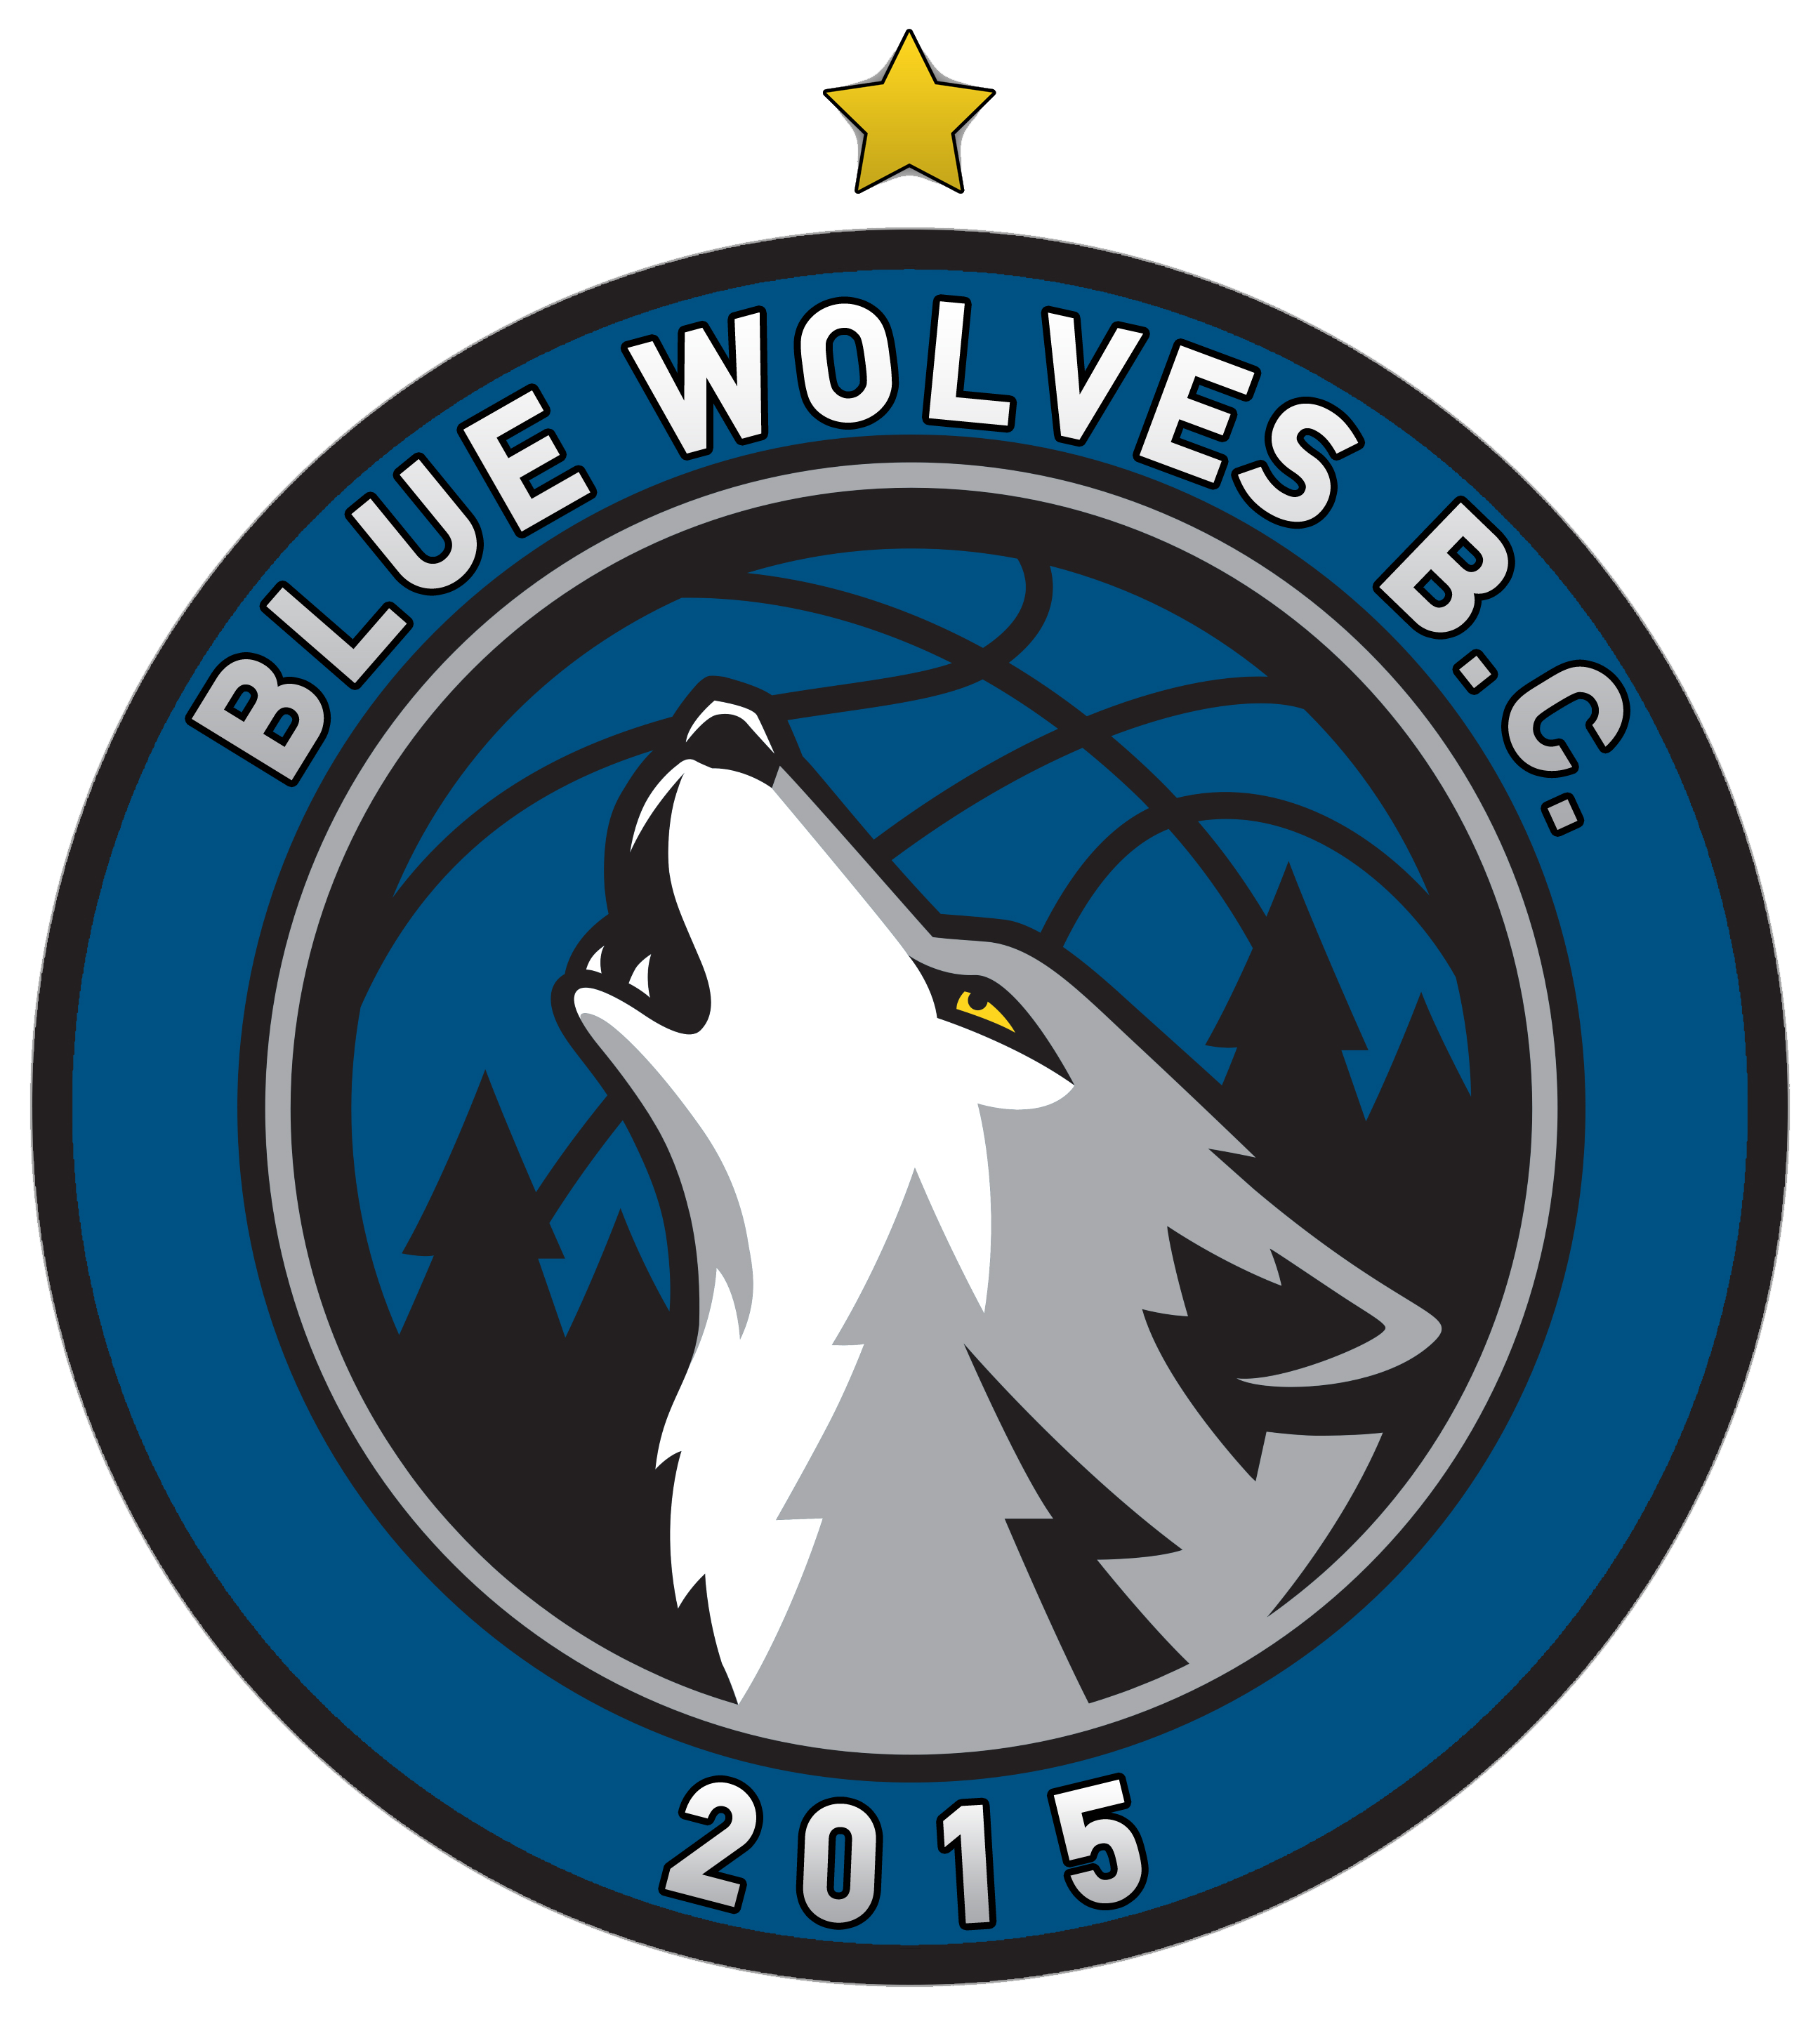 Team symbol of BLUE WOLVES